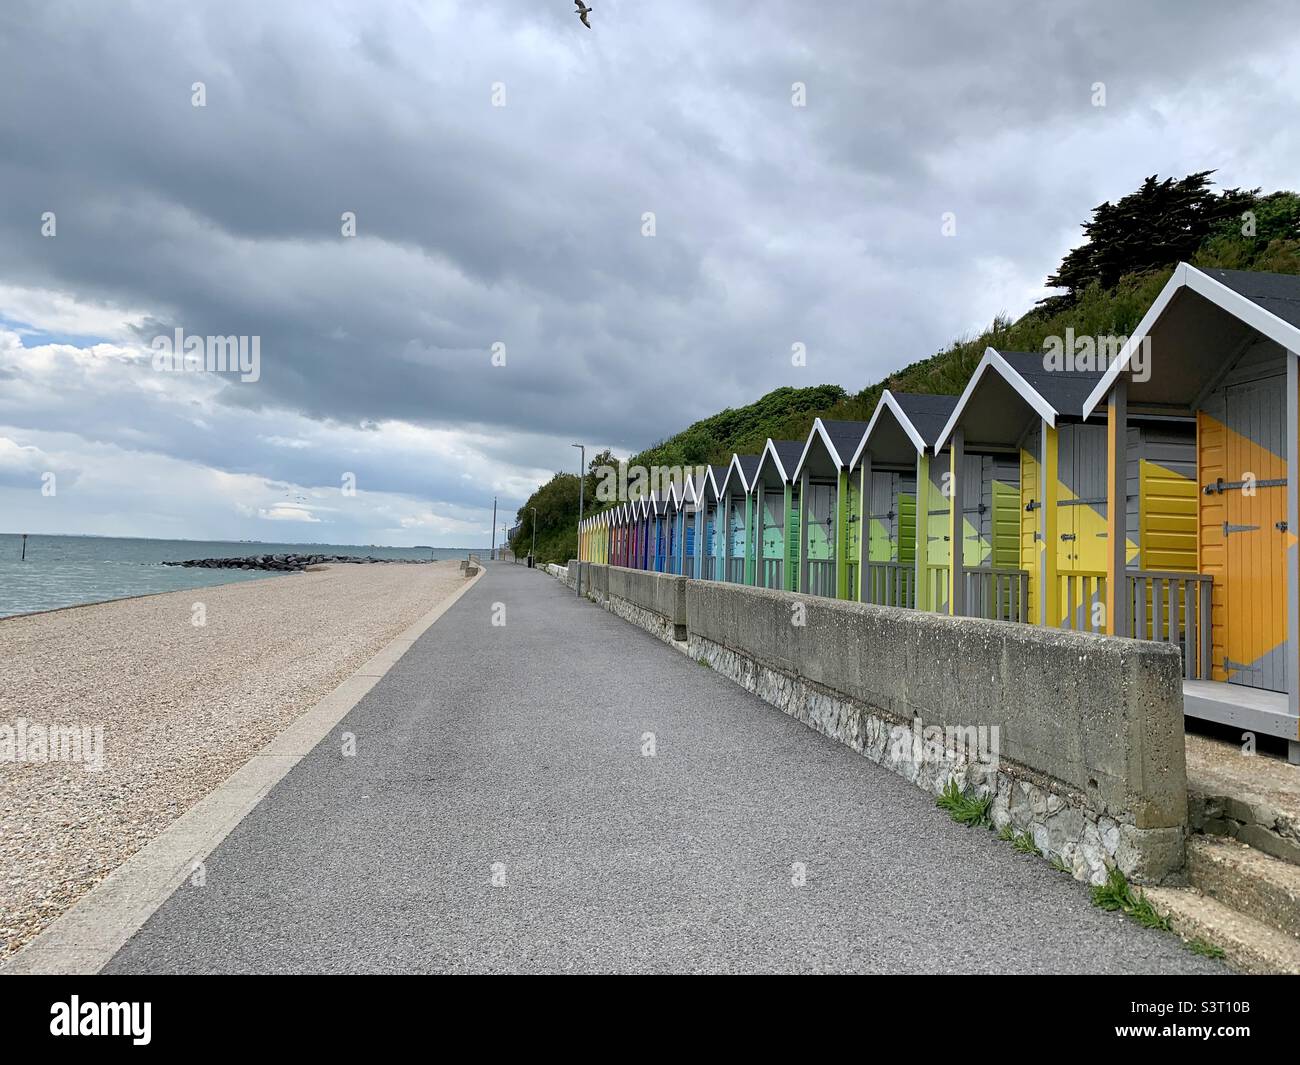 Colourful beach huts in Folkestone Stock Photo